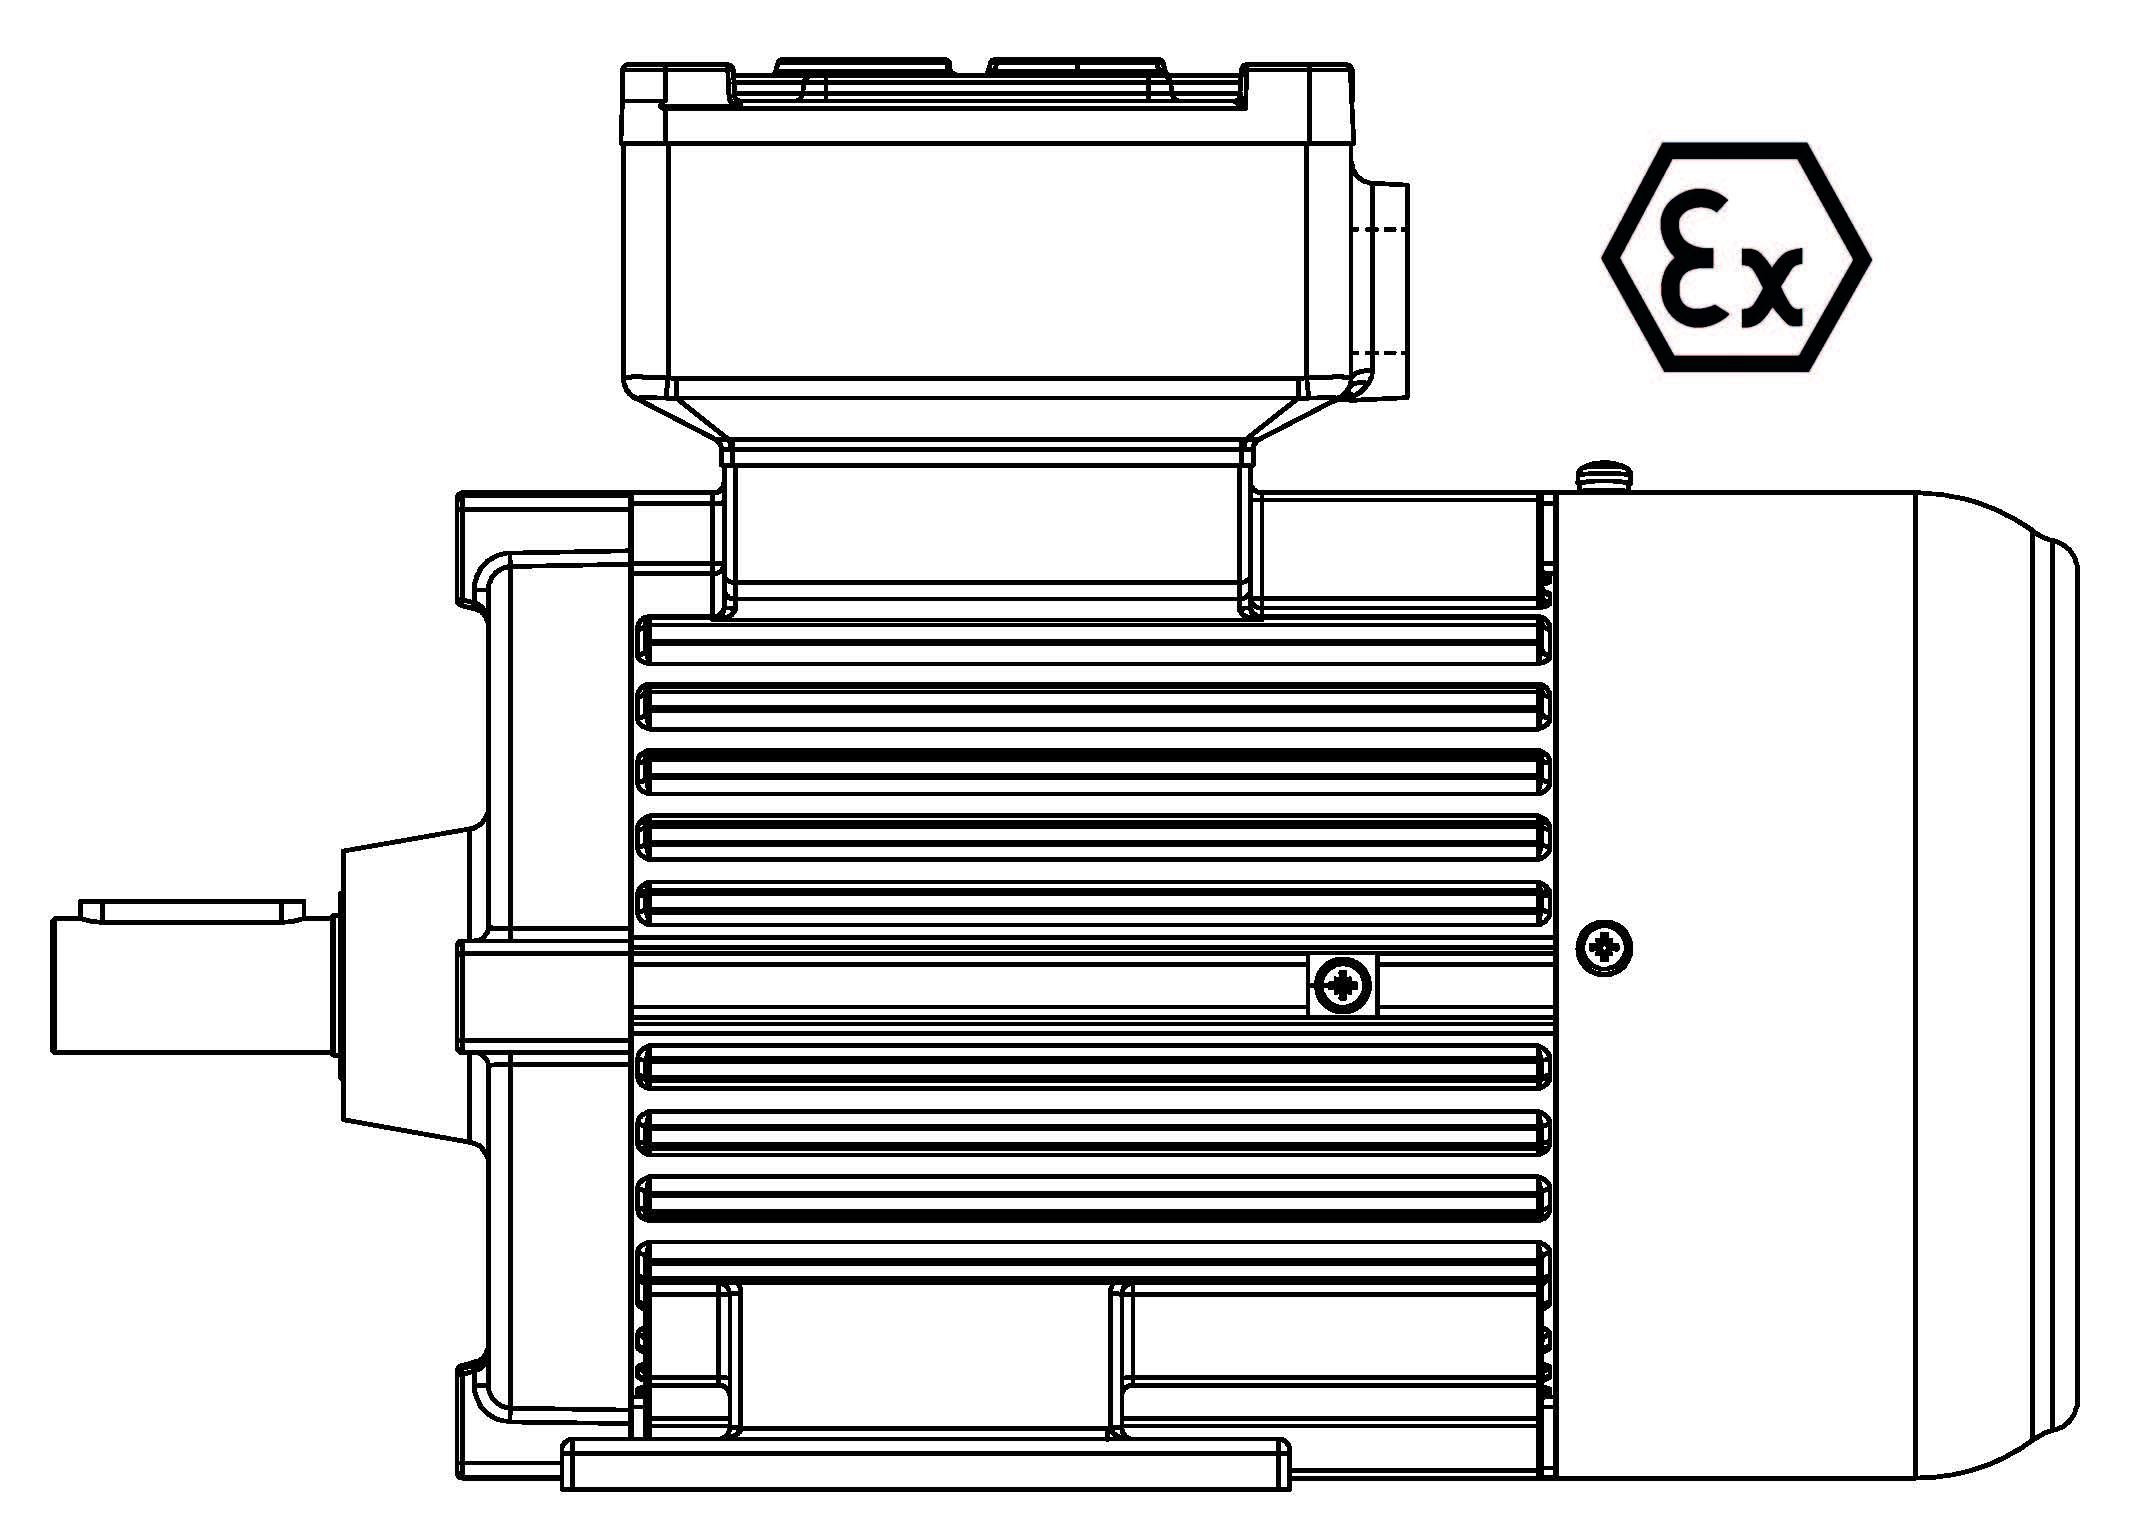 ATEX-100-4P 2,2 B3 400/3/50 Ex d IIB Эл.двигатель B3, разм. 100, 1450 об/мин, 2,2 кВт, 400 В, 3ф, 50 Гц